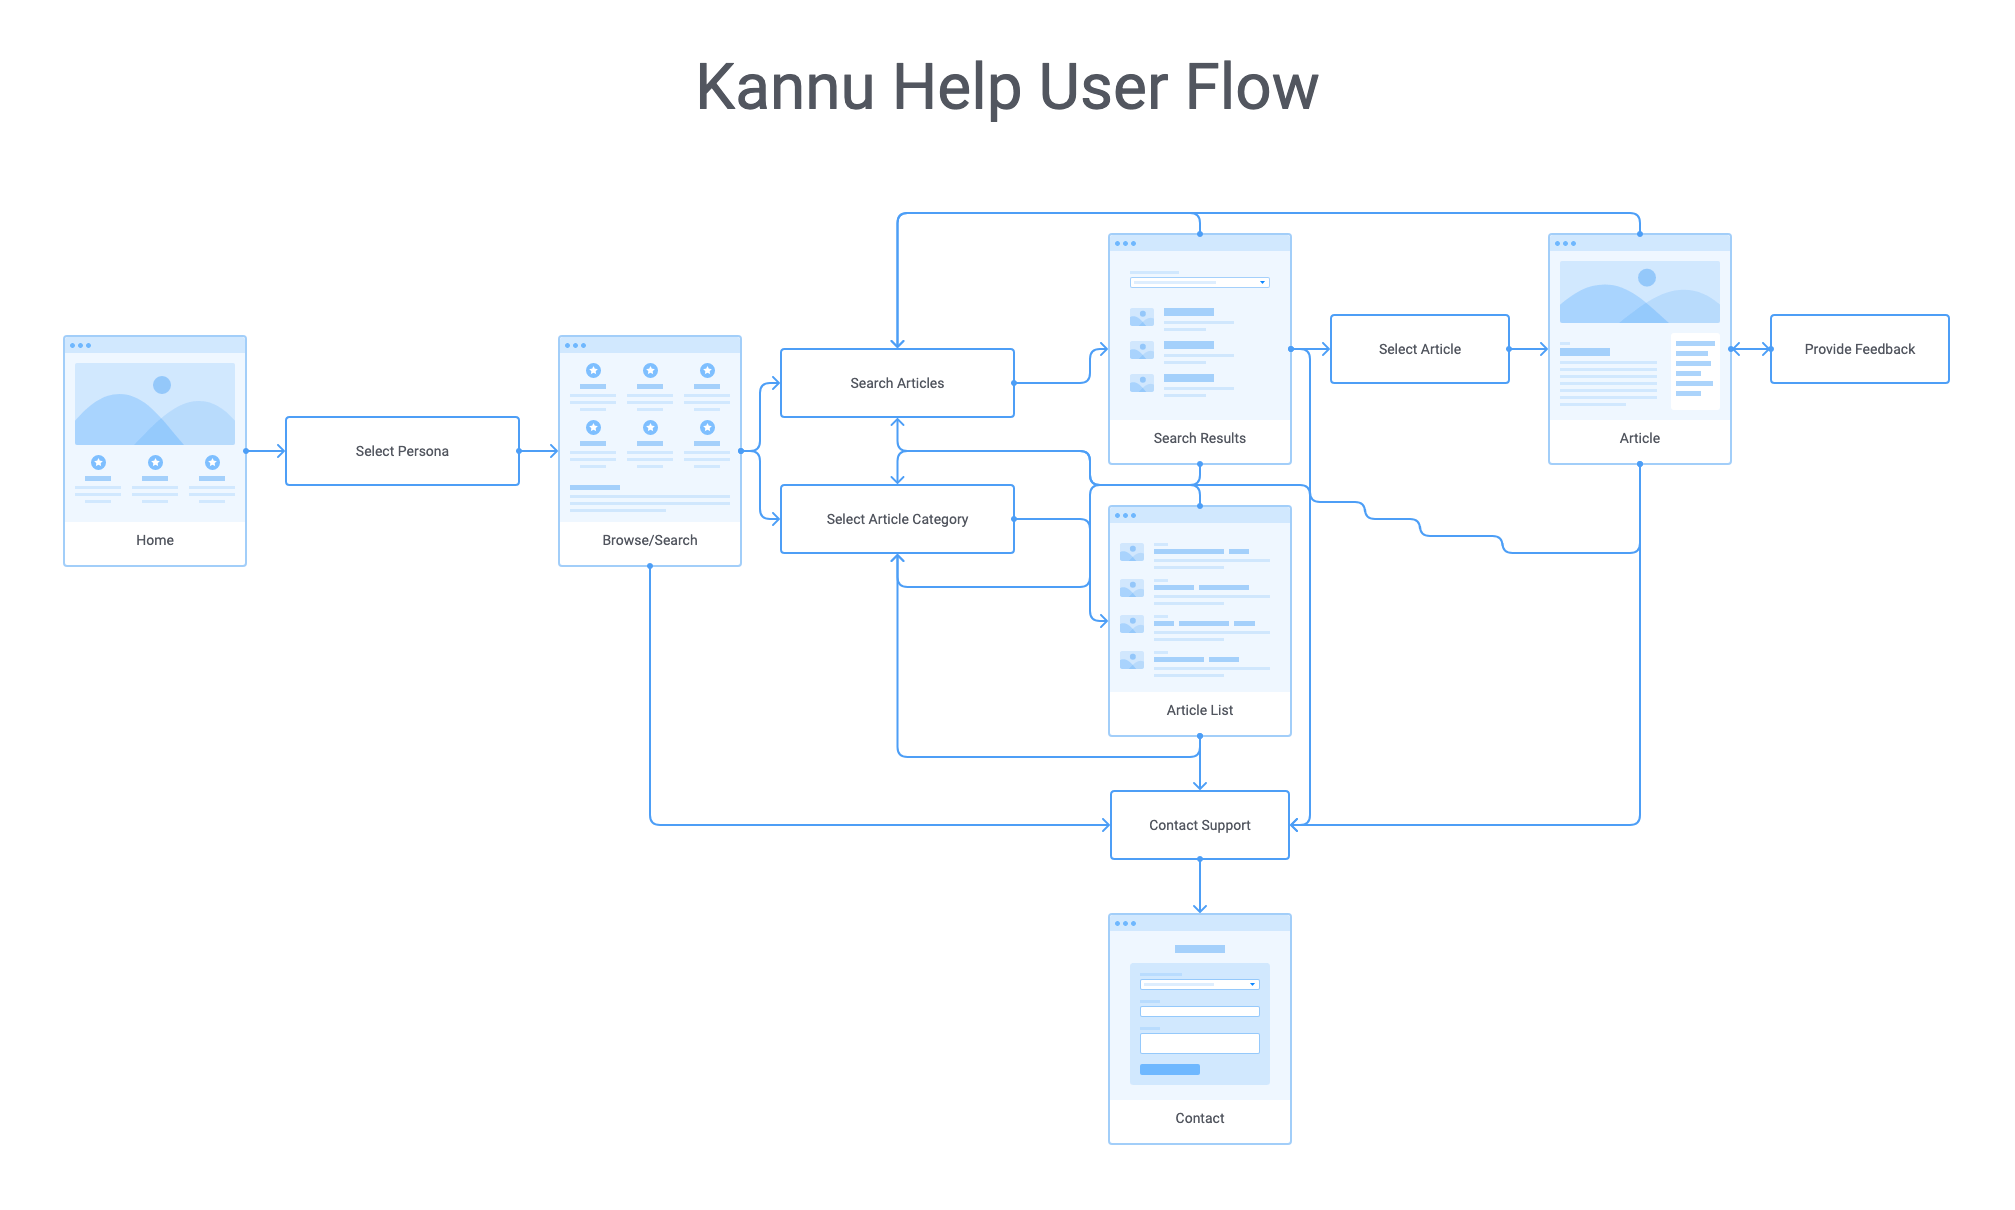 Kannu Help user flow